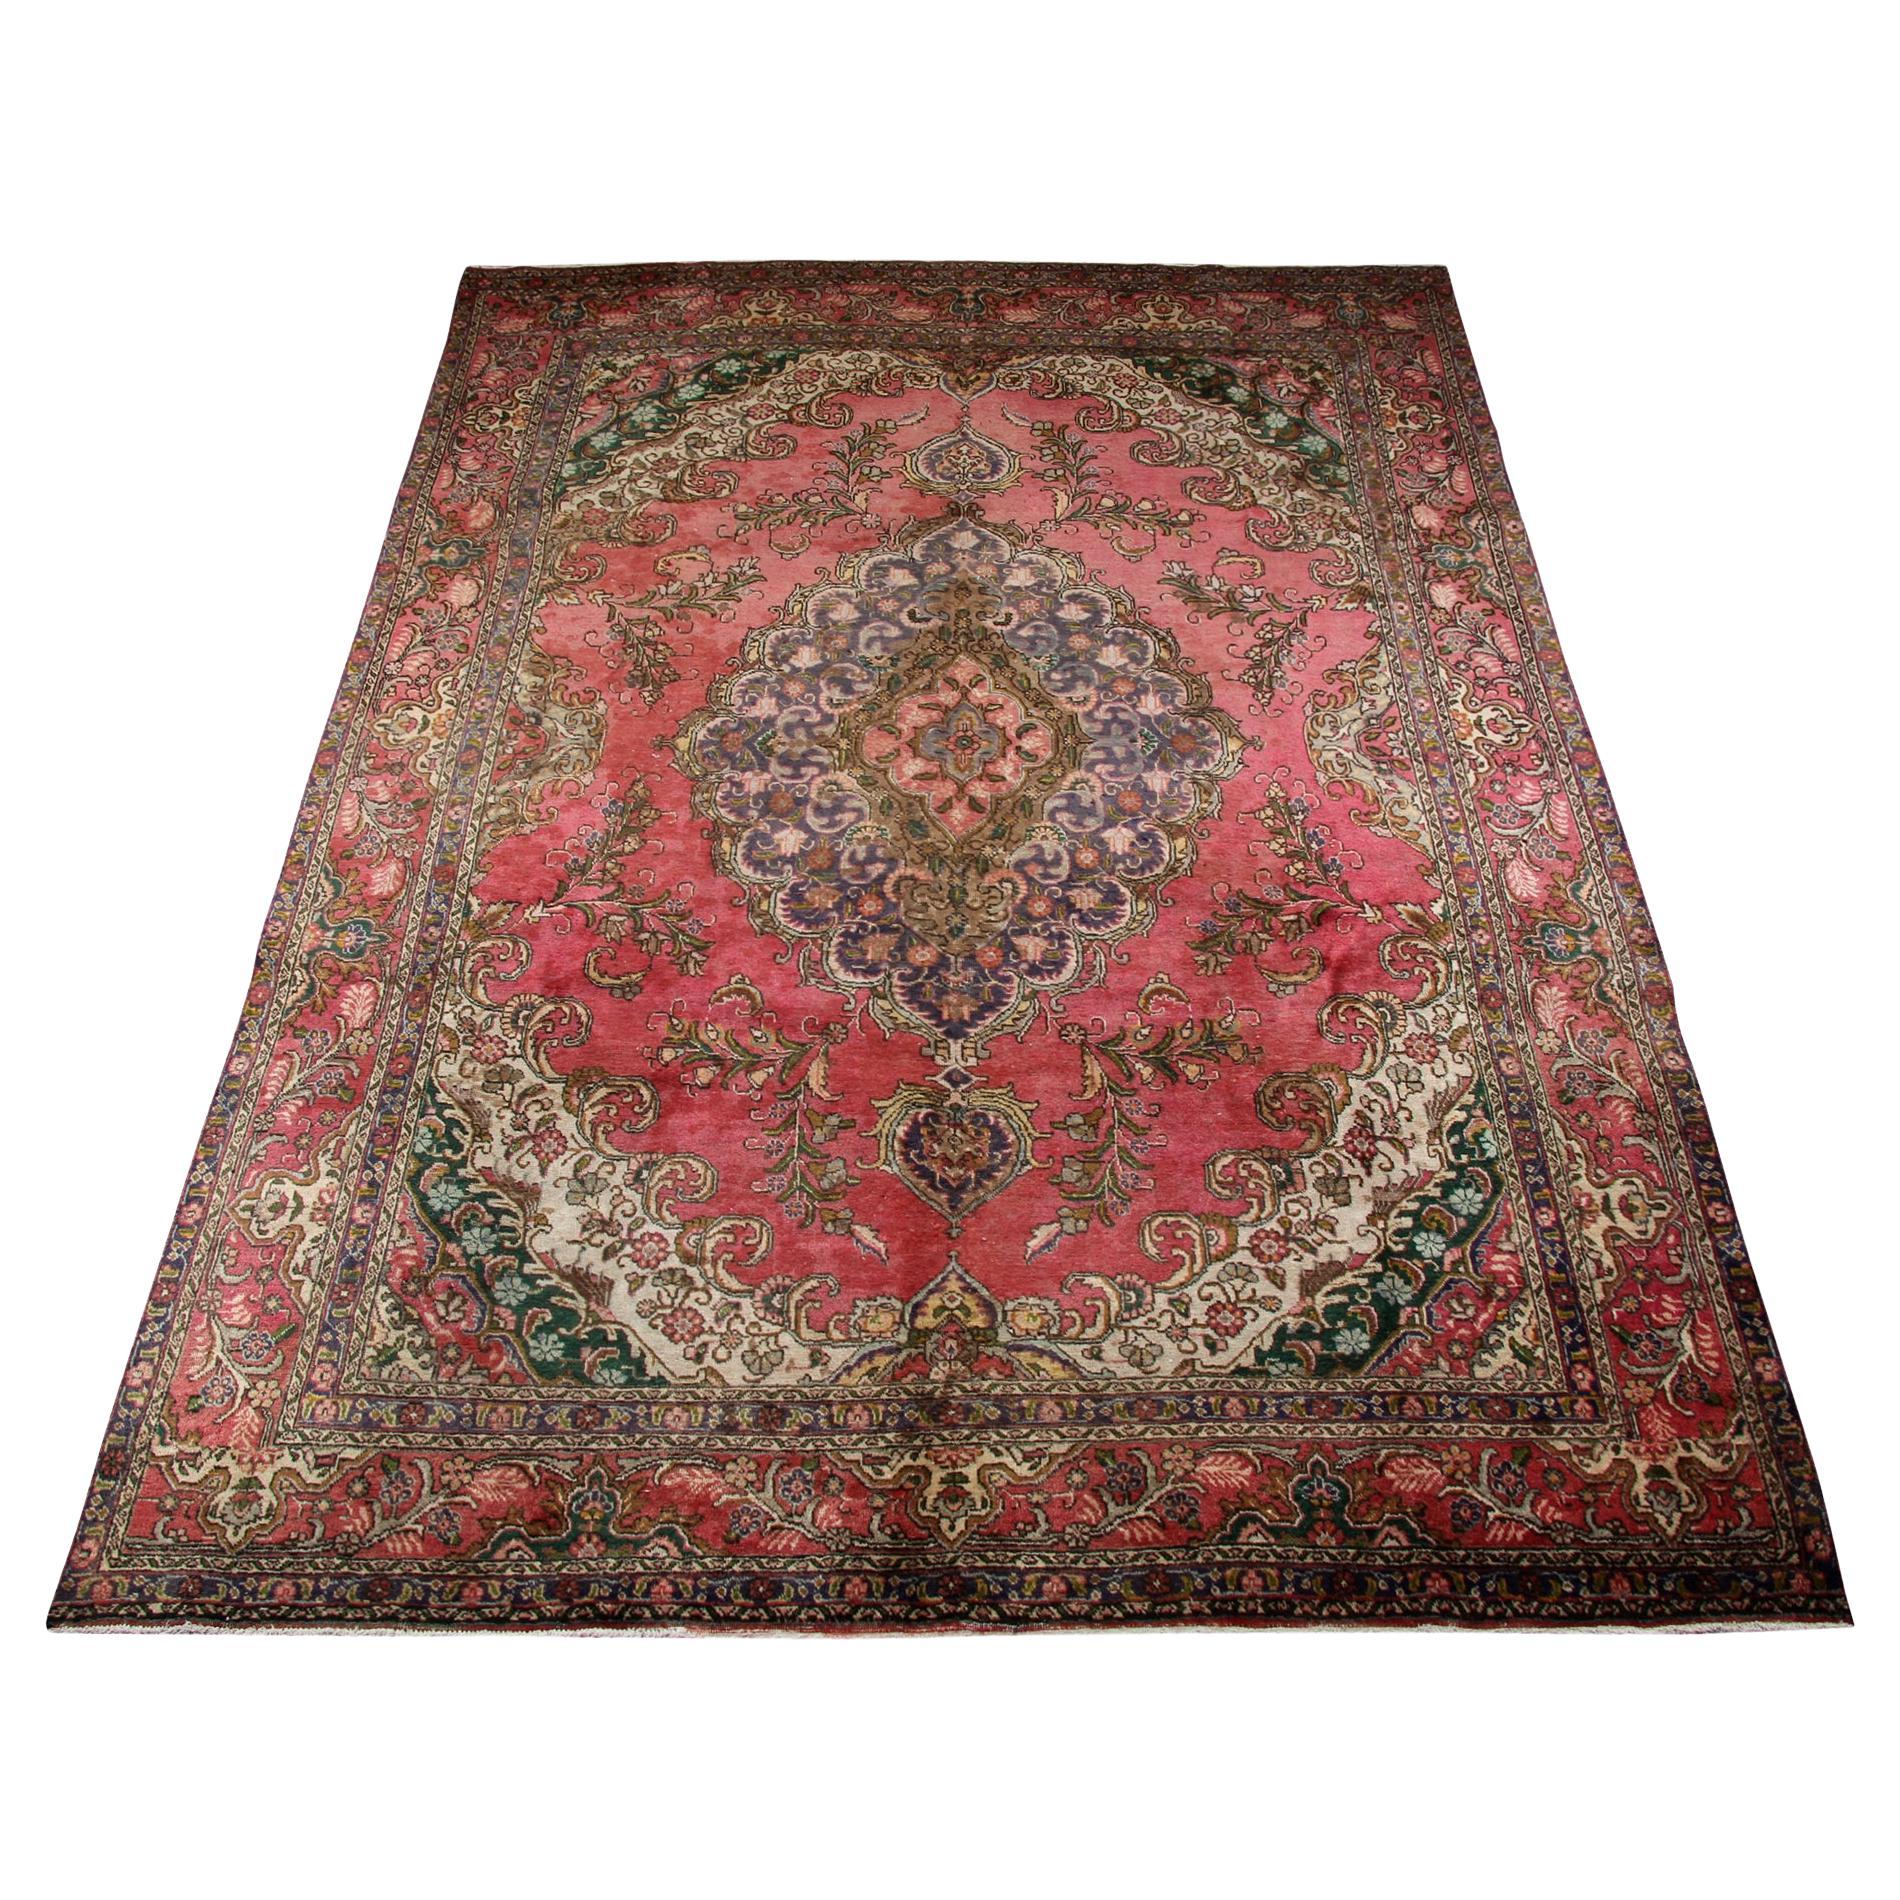 Large Turkish Vintage Rug Handmade Carpet Red Wool Oriental Area Rug